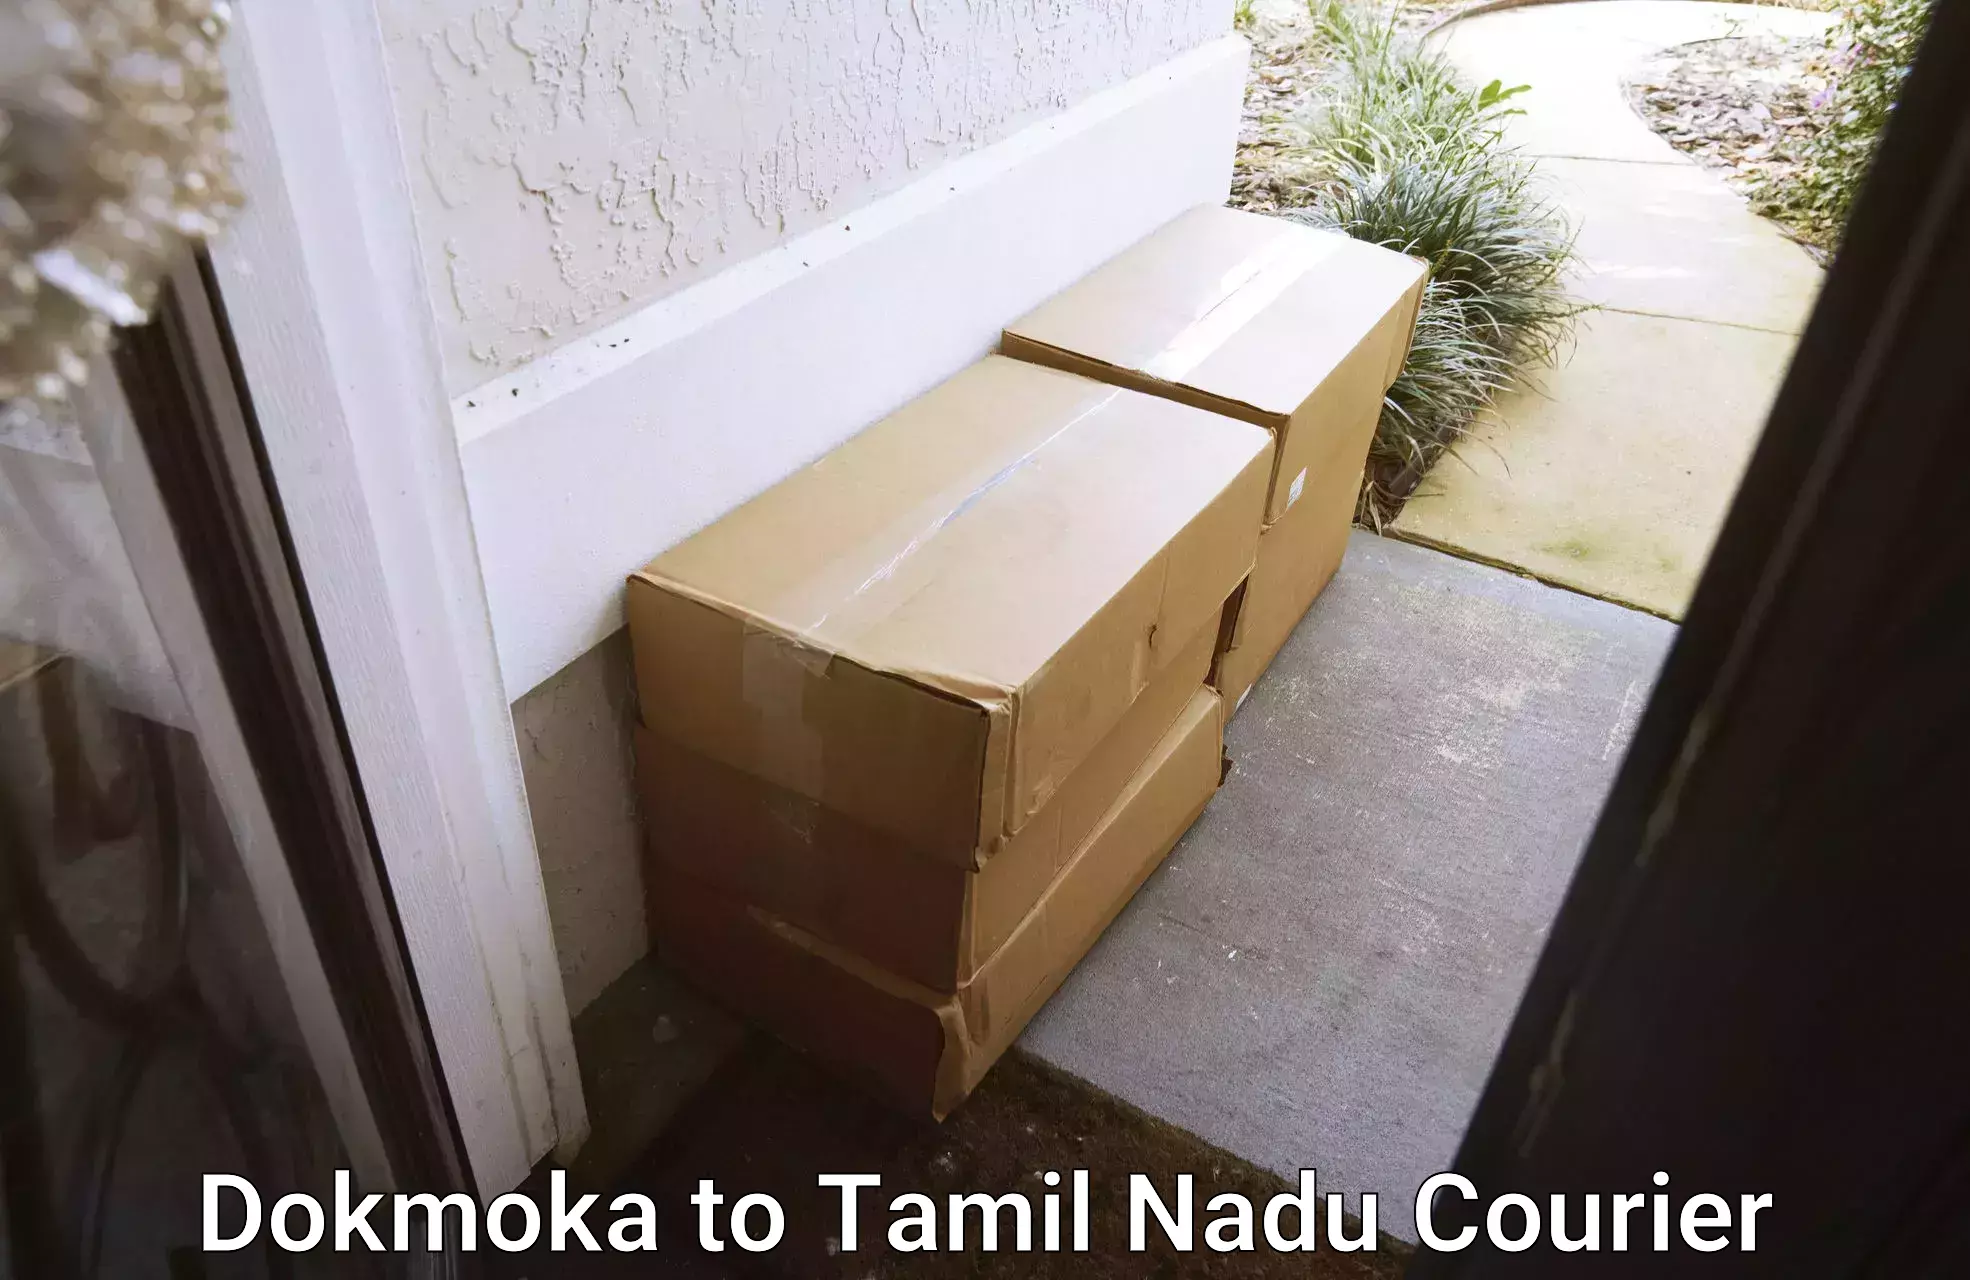 Bulk courier orders Dokmoka to Periyakulam